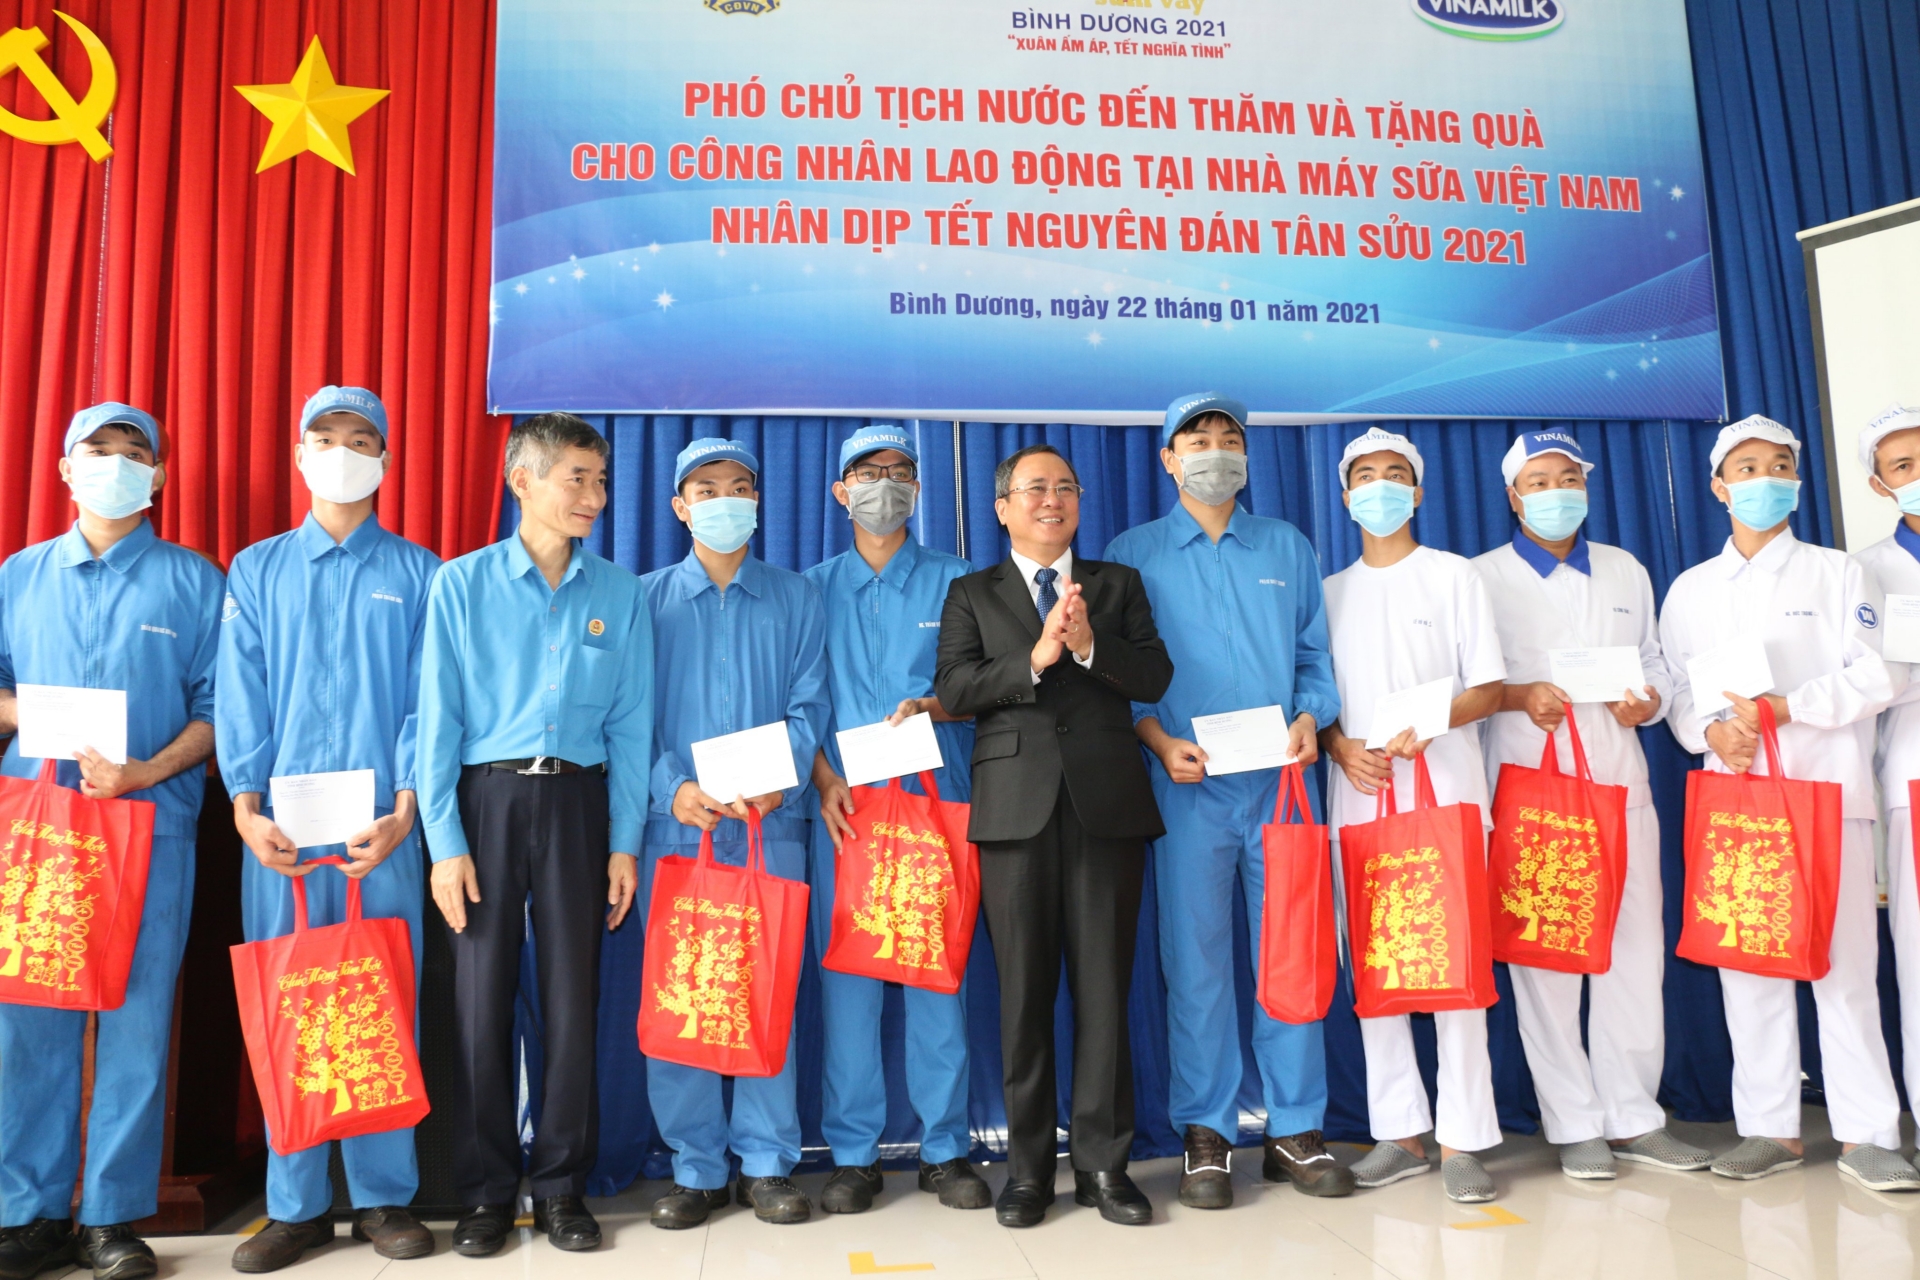 Phó Chủ tịch nước đề nghị cần quan tâm đến những công nhân bám xưởng trong dịp Tết